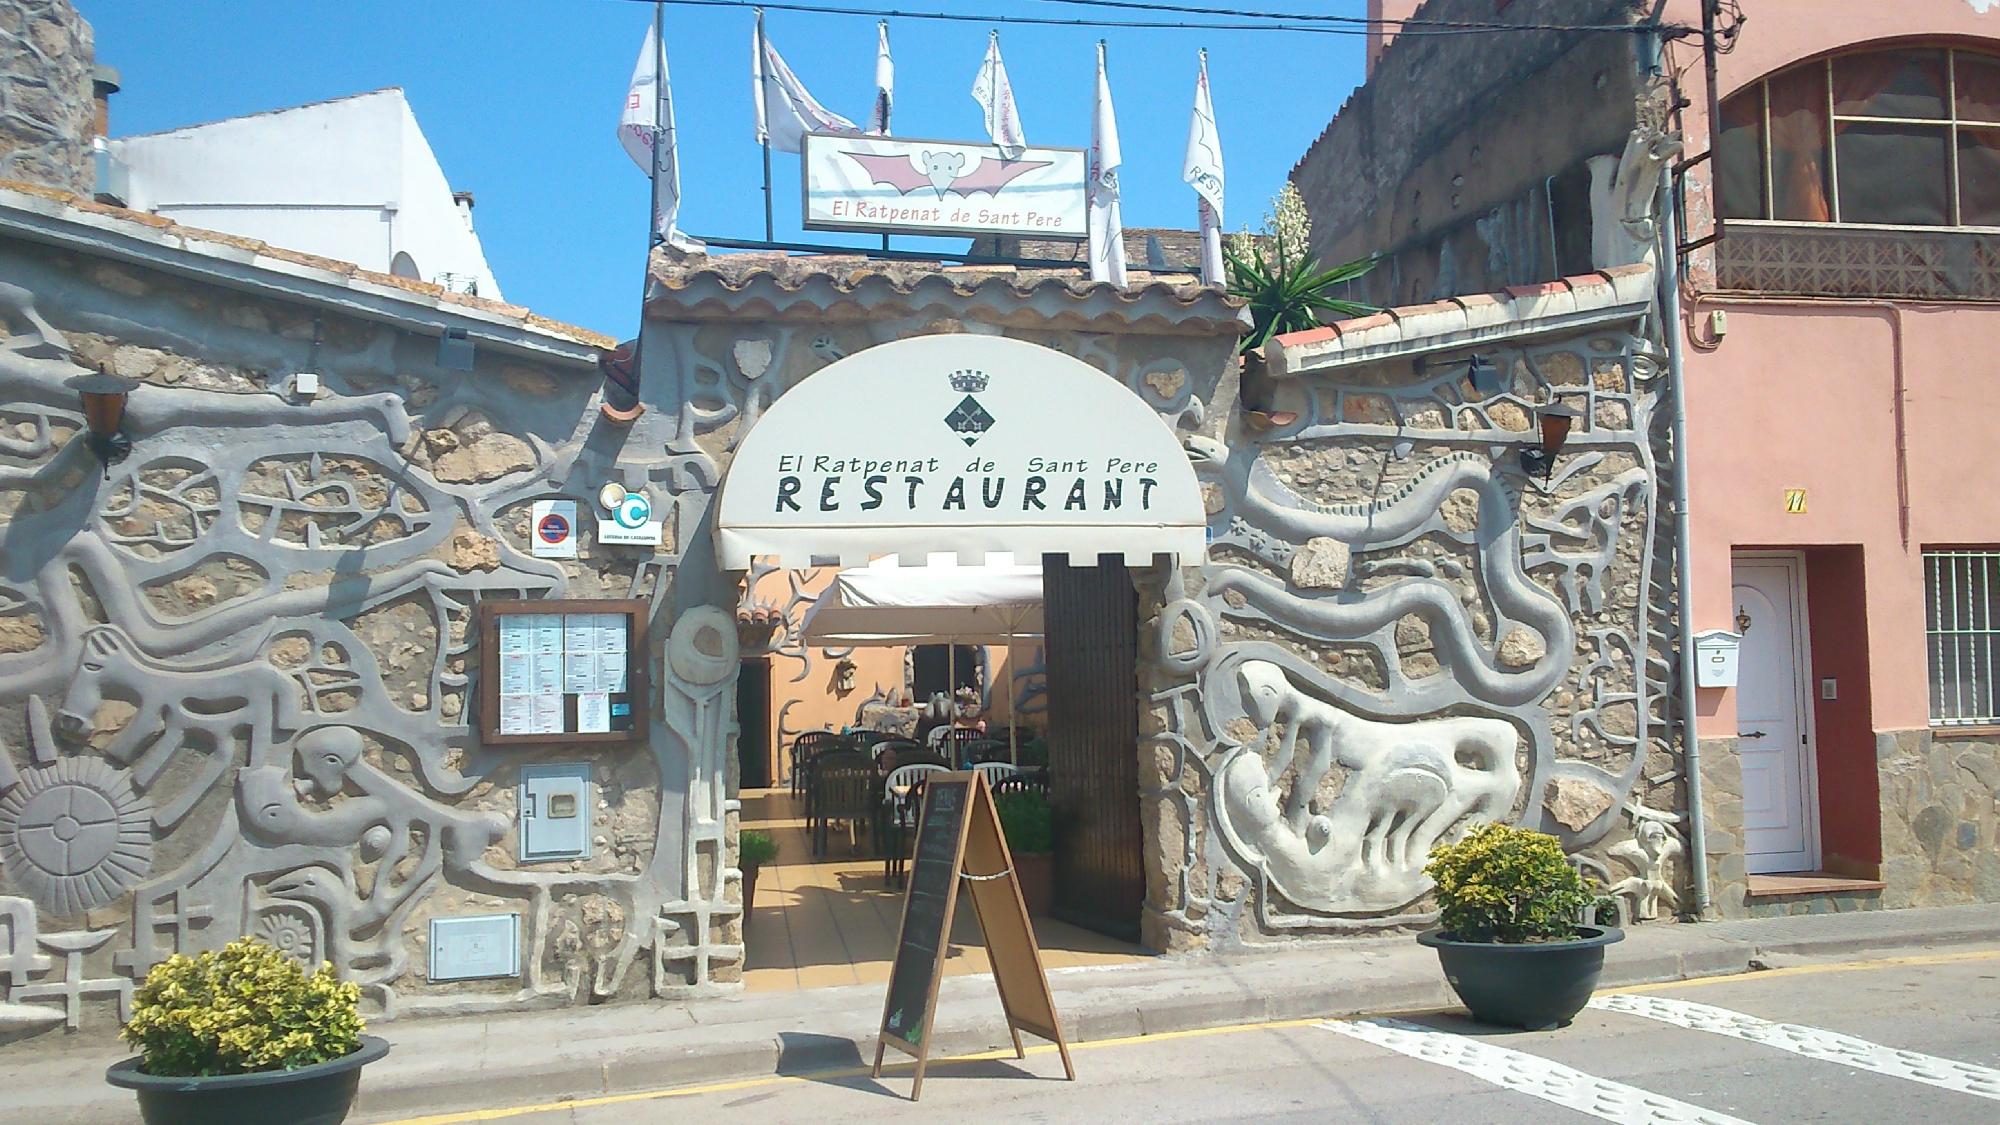 Restaurant Ratpenat de Sant Pere